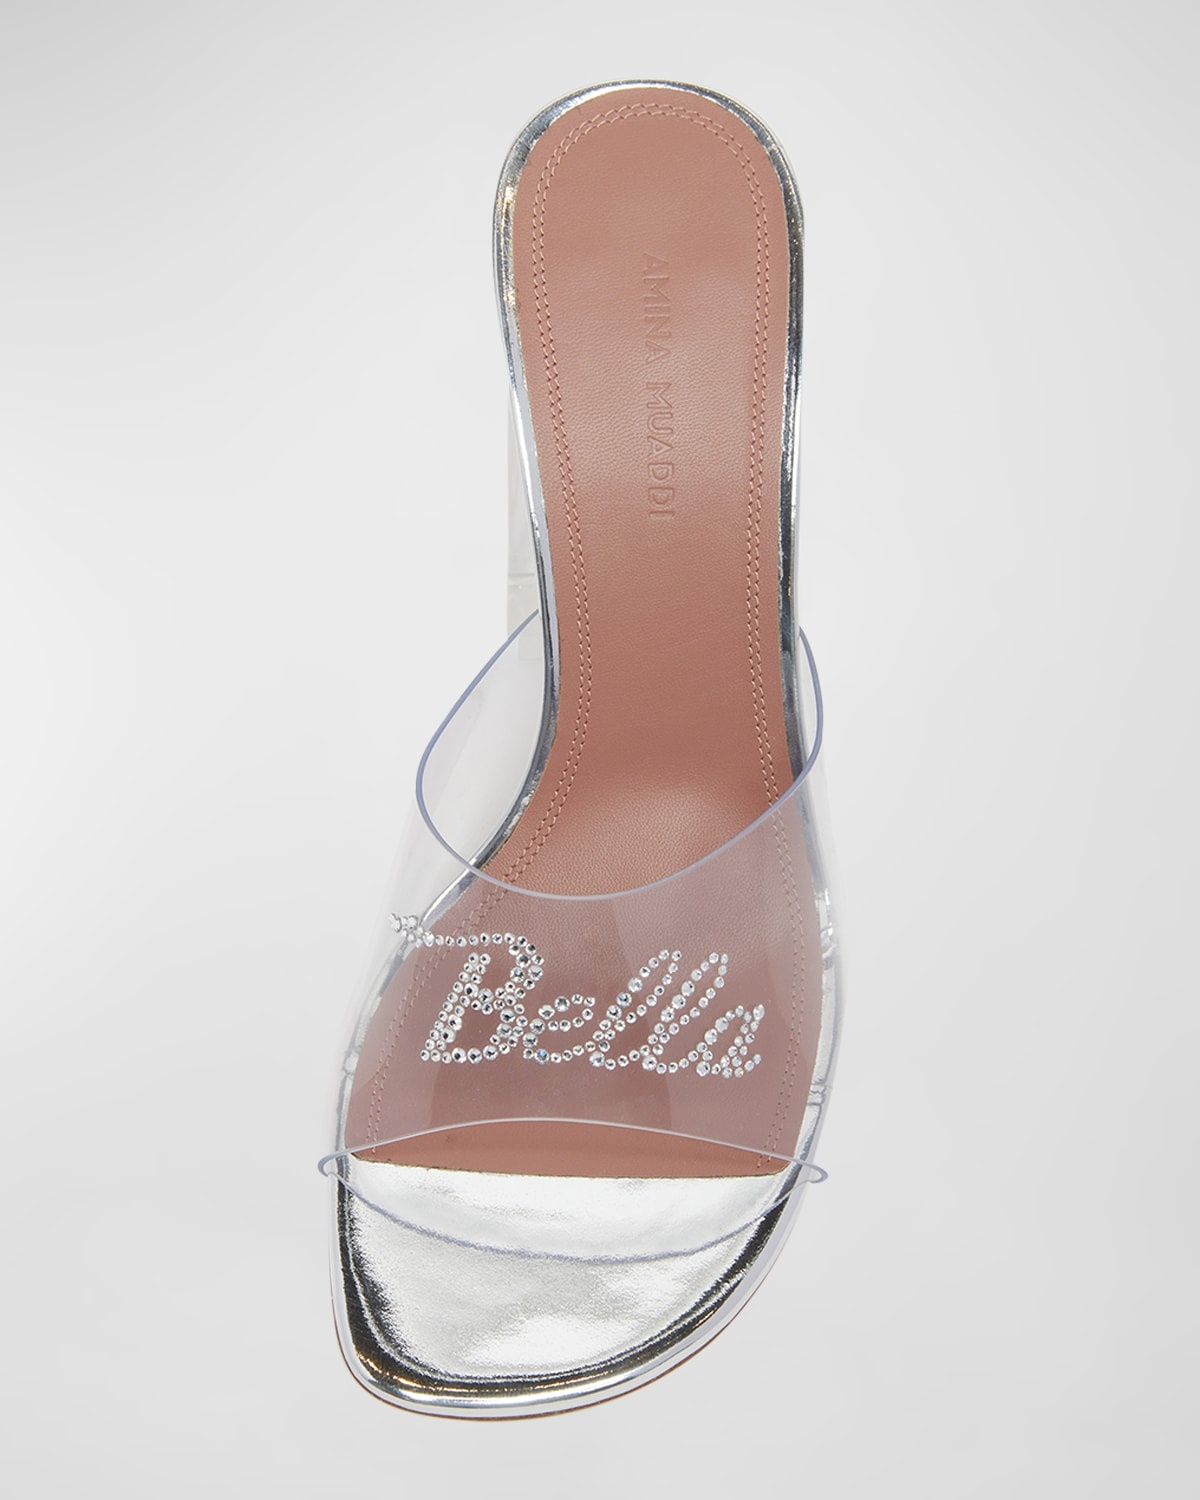 Bella Glass Slipper Mule Sandals - 4